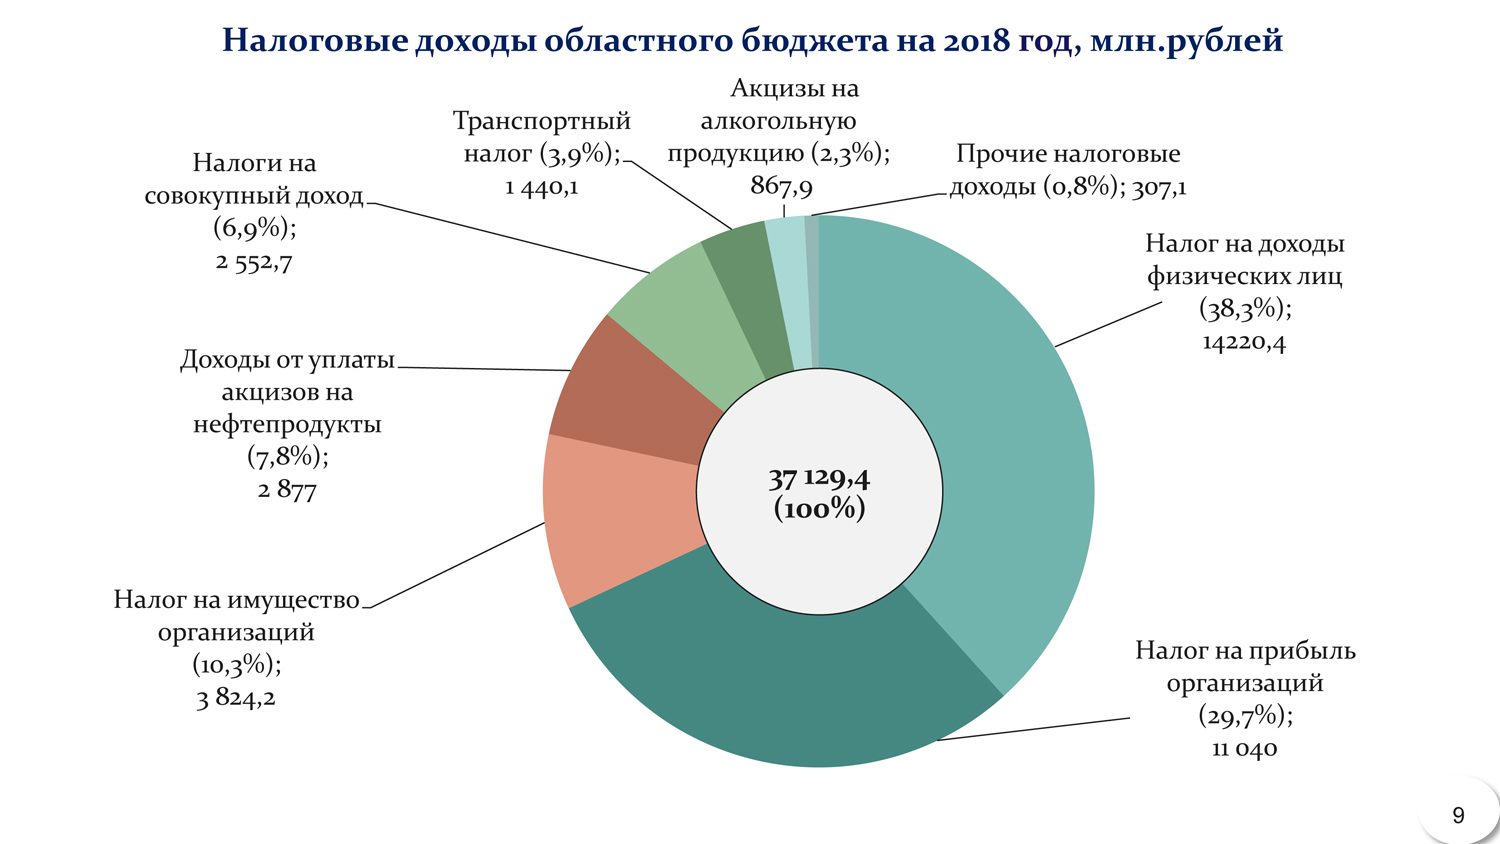 Структура доходов региональных бюджетов РФ